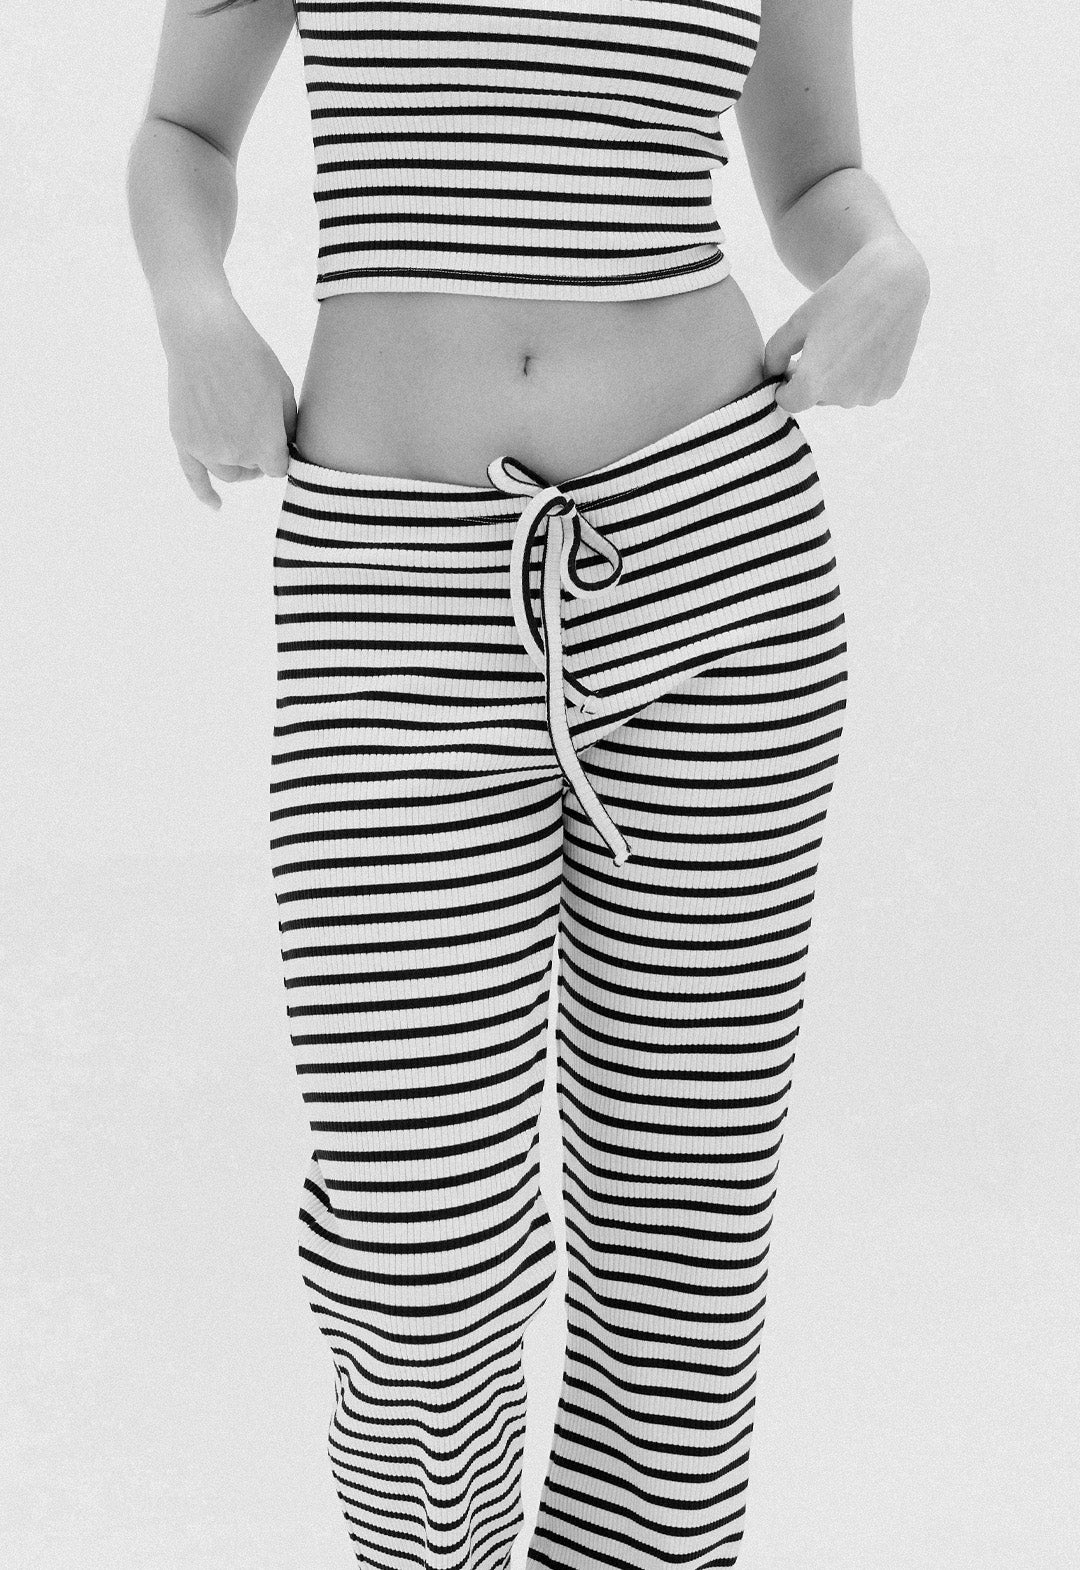 Buy Cropp women regular fit stripe drawstring pants black and white Online